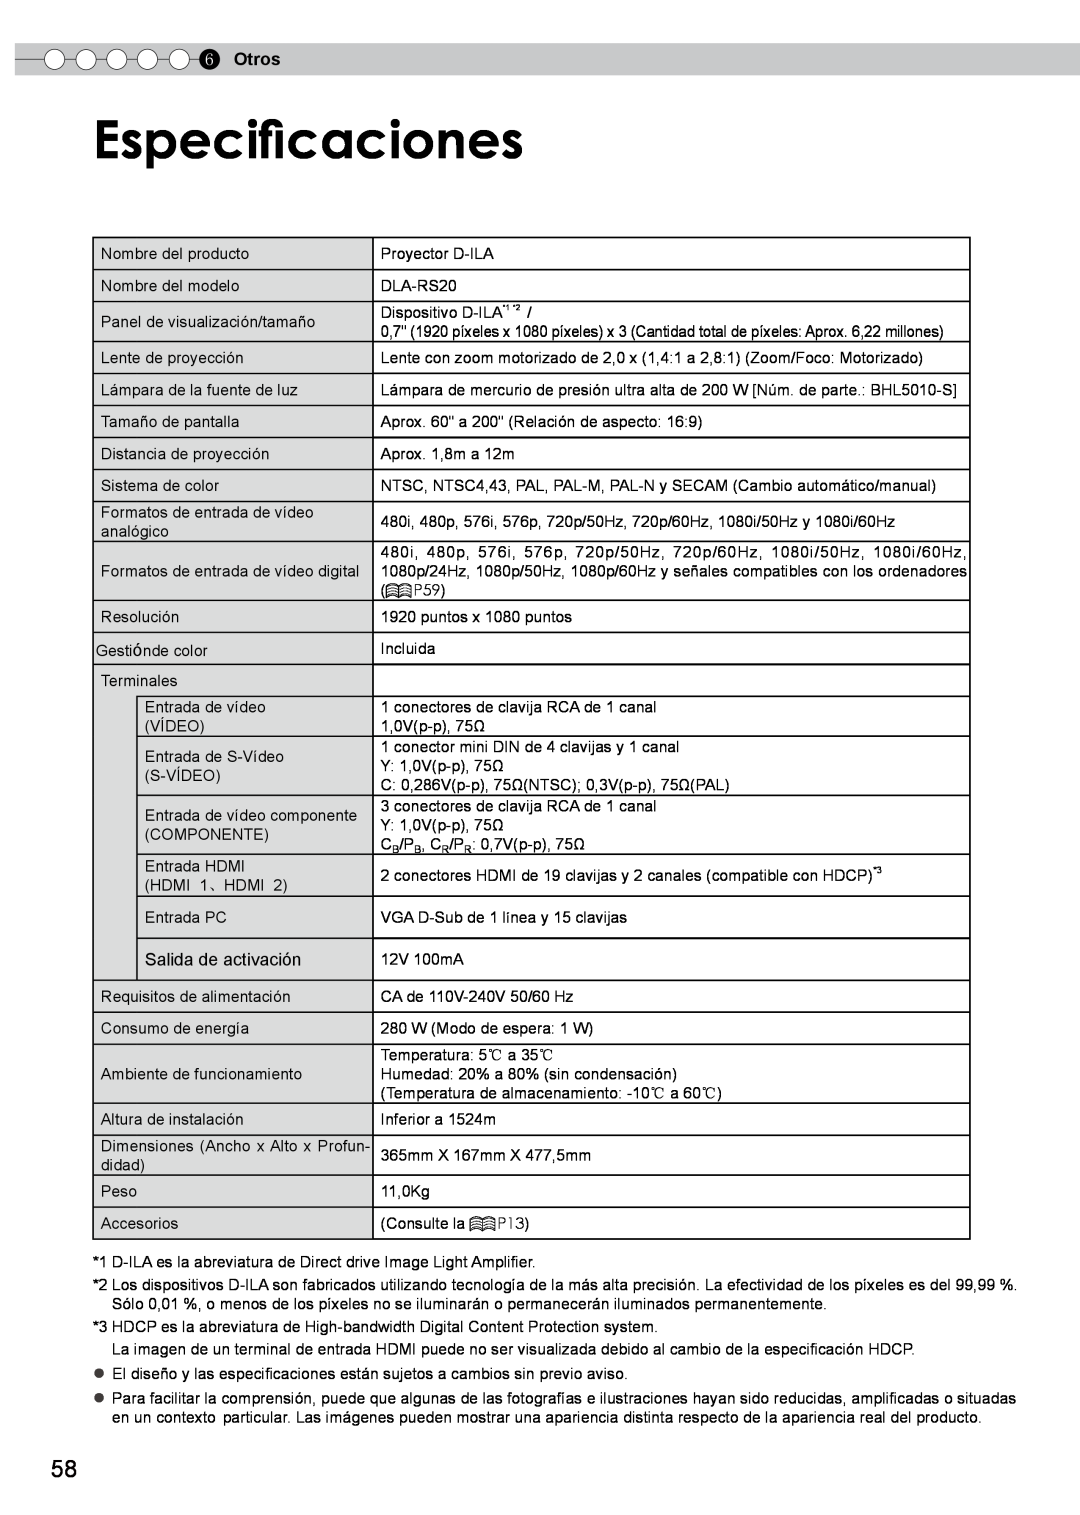 JVC PB006596599-0 manual Especificaciones, Otros, Salida de activación 